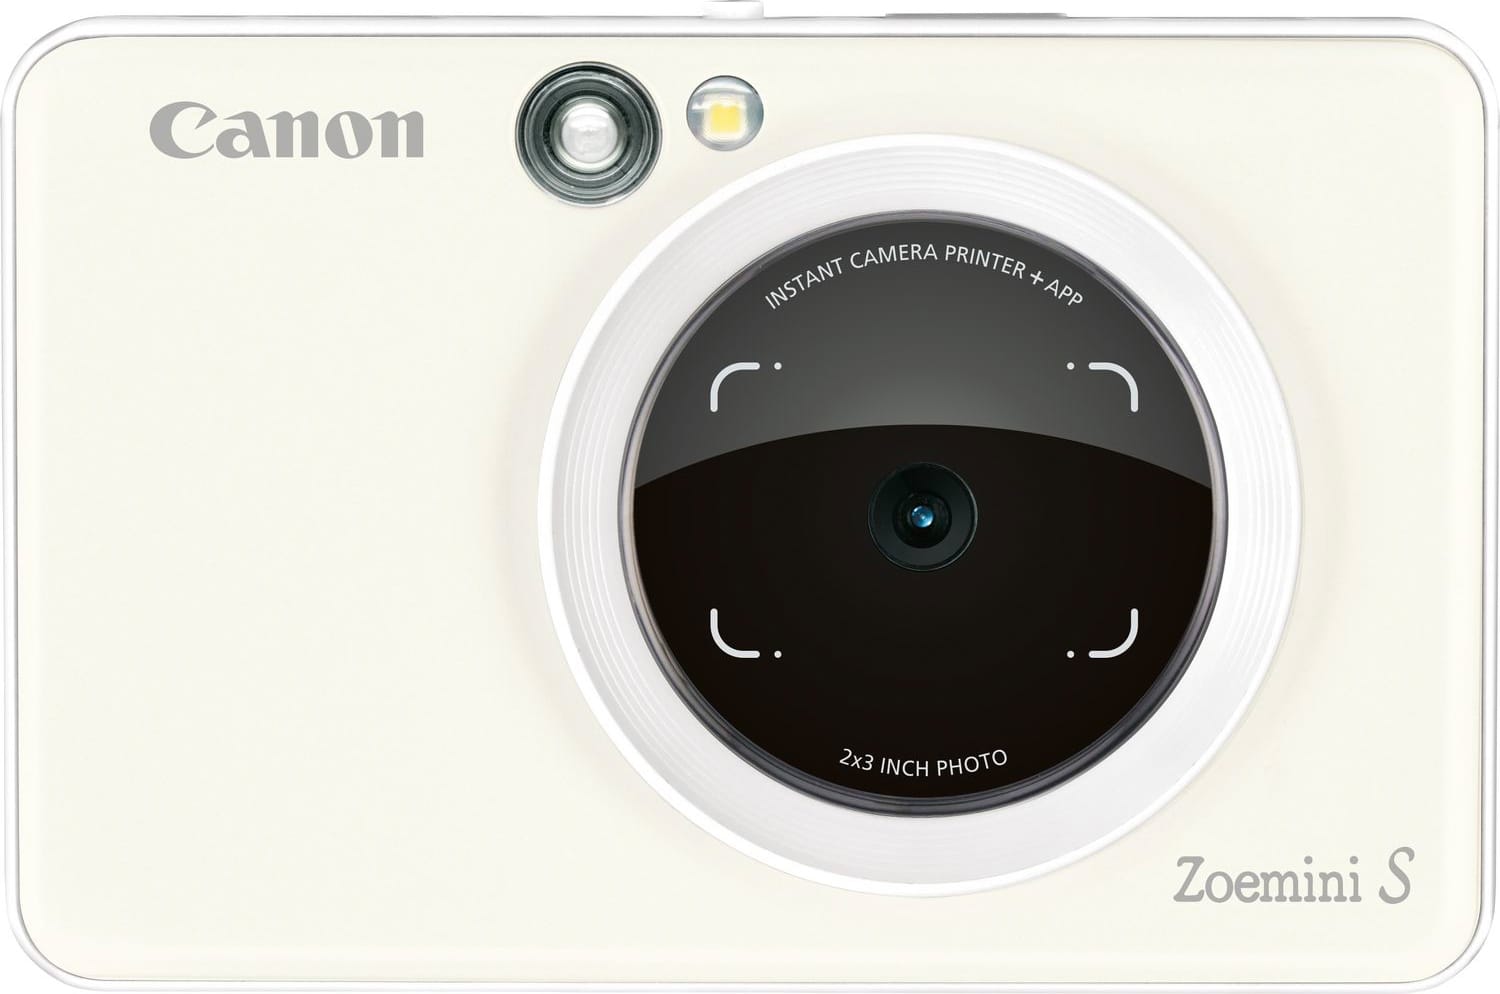 Canon 3879c006 Fotocamera Digitale Istantanea 8 Mpx Capacità 10 Fogli 5 X 7,5 Cm Stampa Zink Risoluzione Stampa 314 X 400 Dpi Bluetooth Nfc Compatibile Ios E Android Colore Bianco Perla - Zoemini S